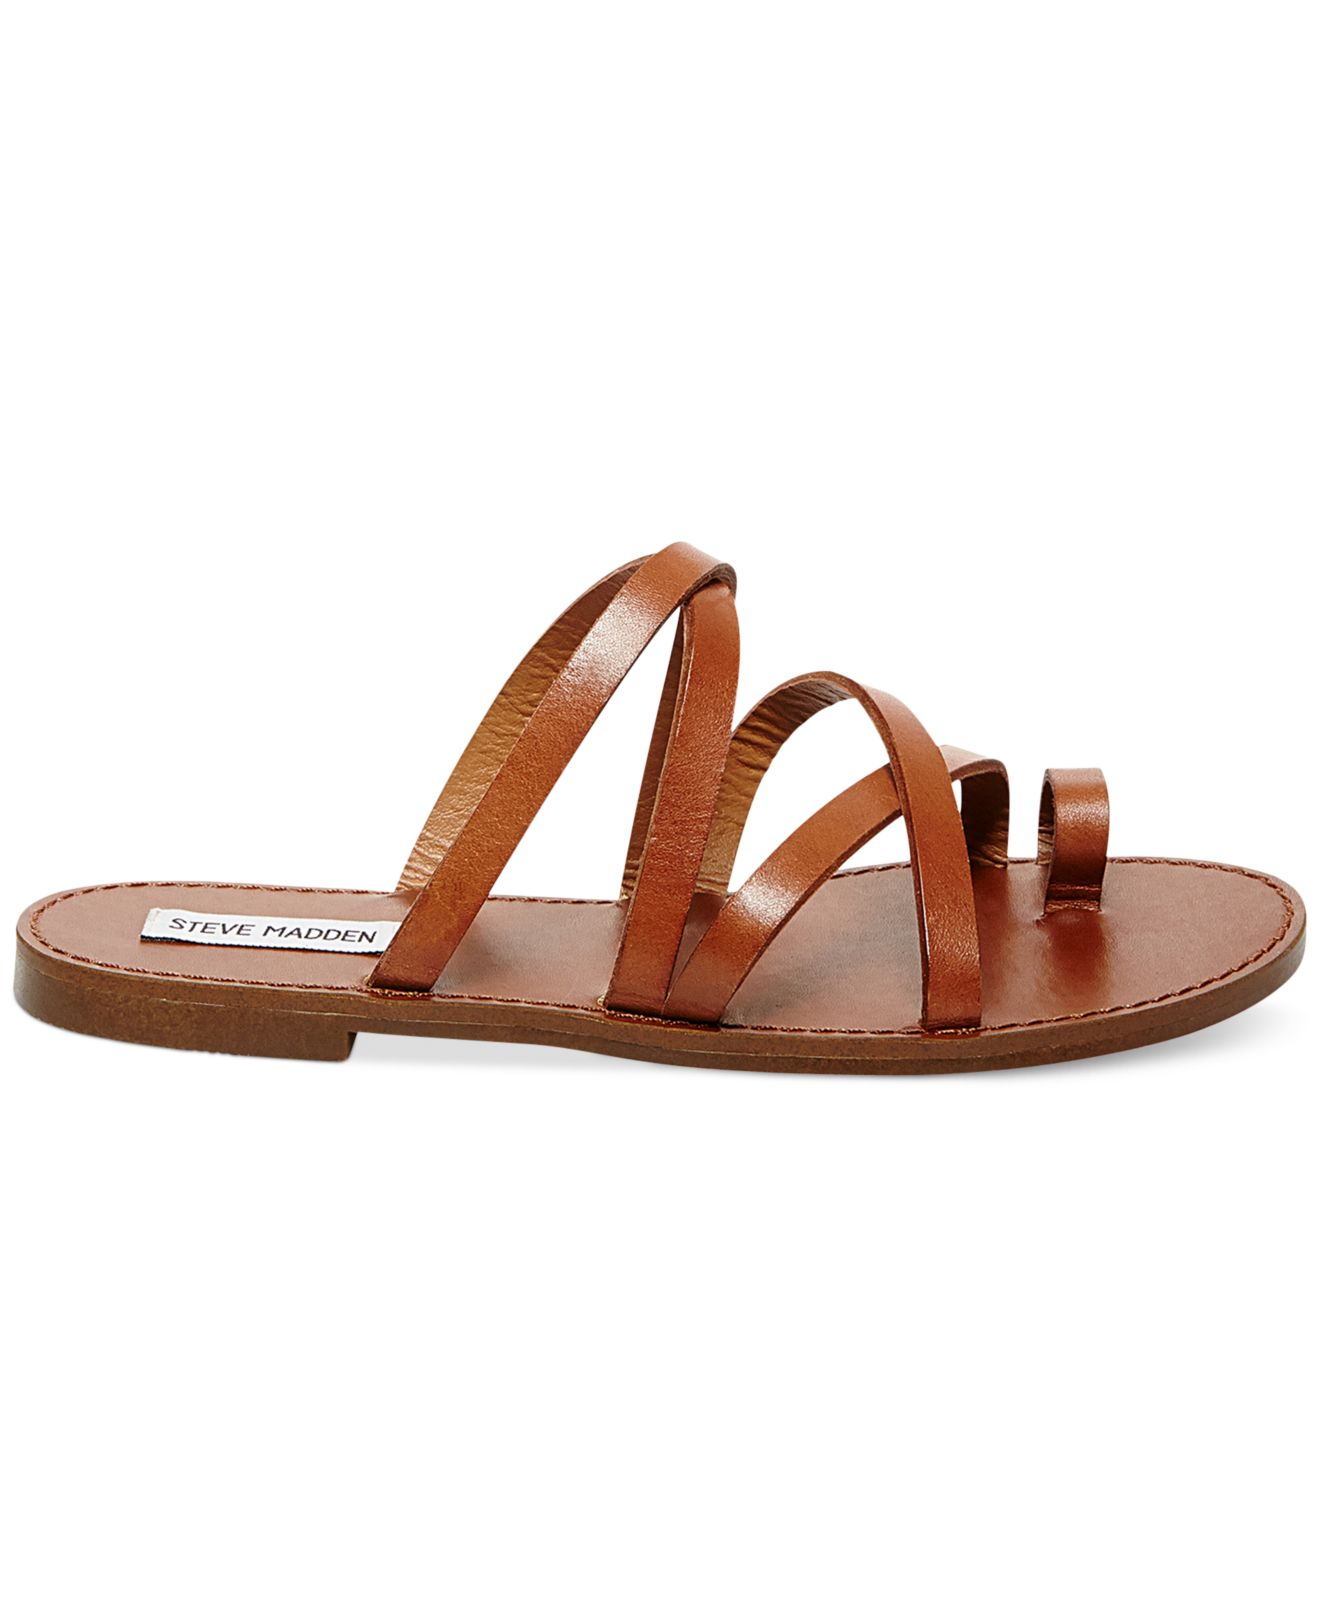 Steve madden Antler Flat Toe Ring Slide Sandals in Brown | Lyst